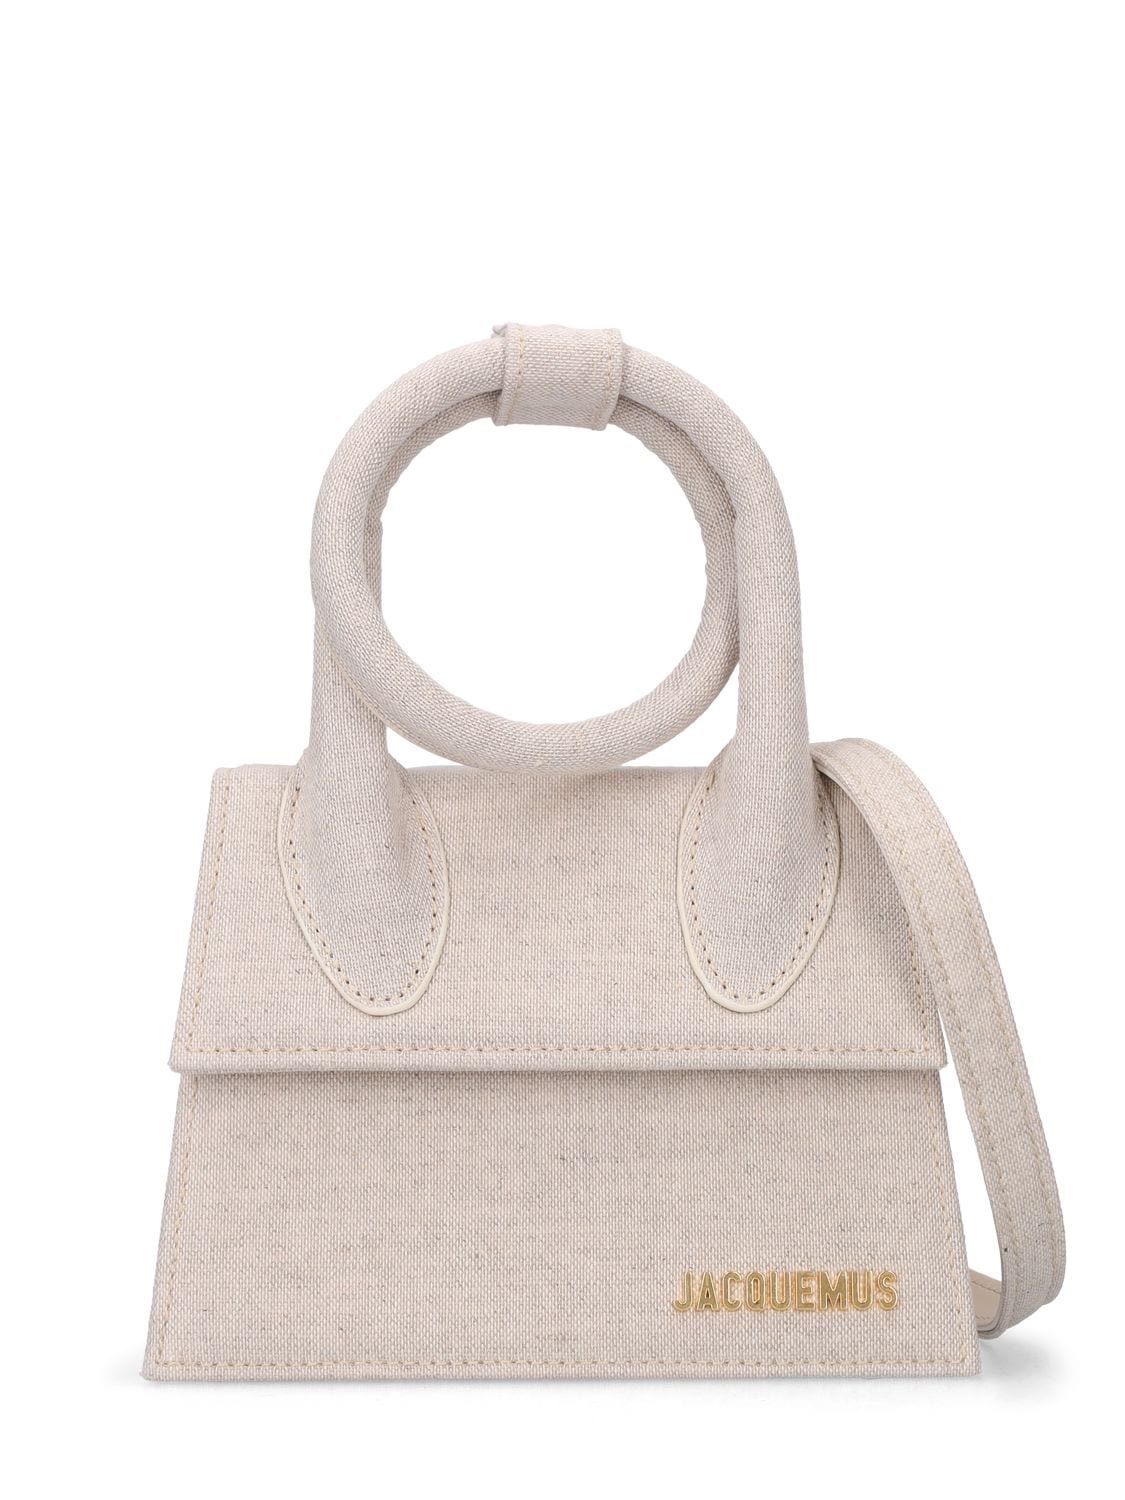 JACQUEMUS Le Chiquito Noeud Cotton & Linen Bag